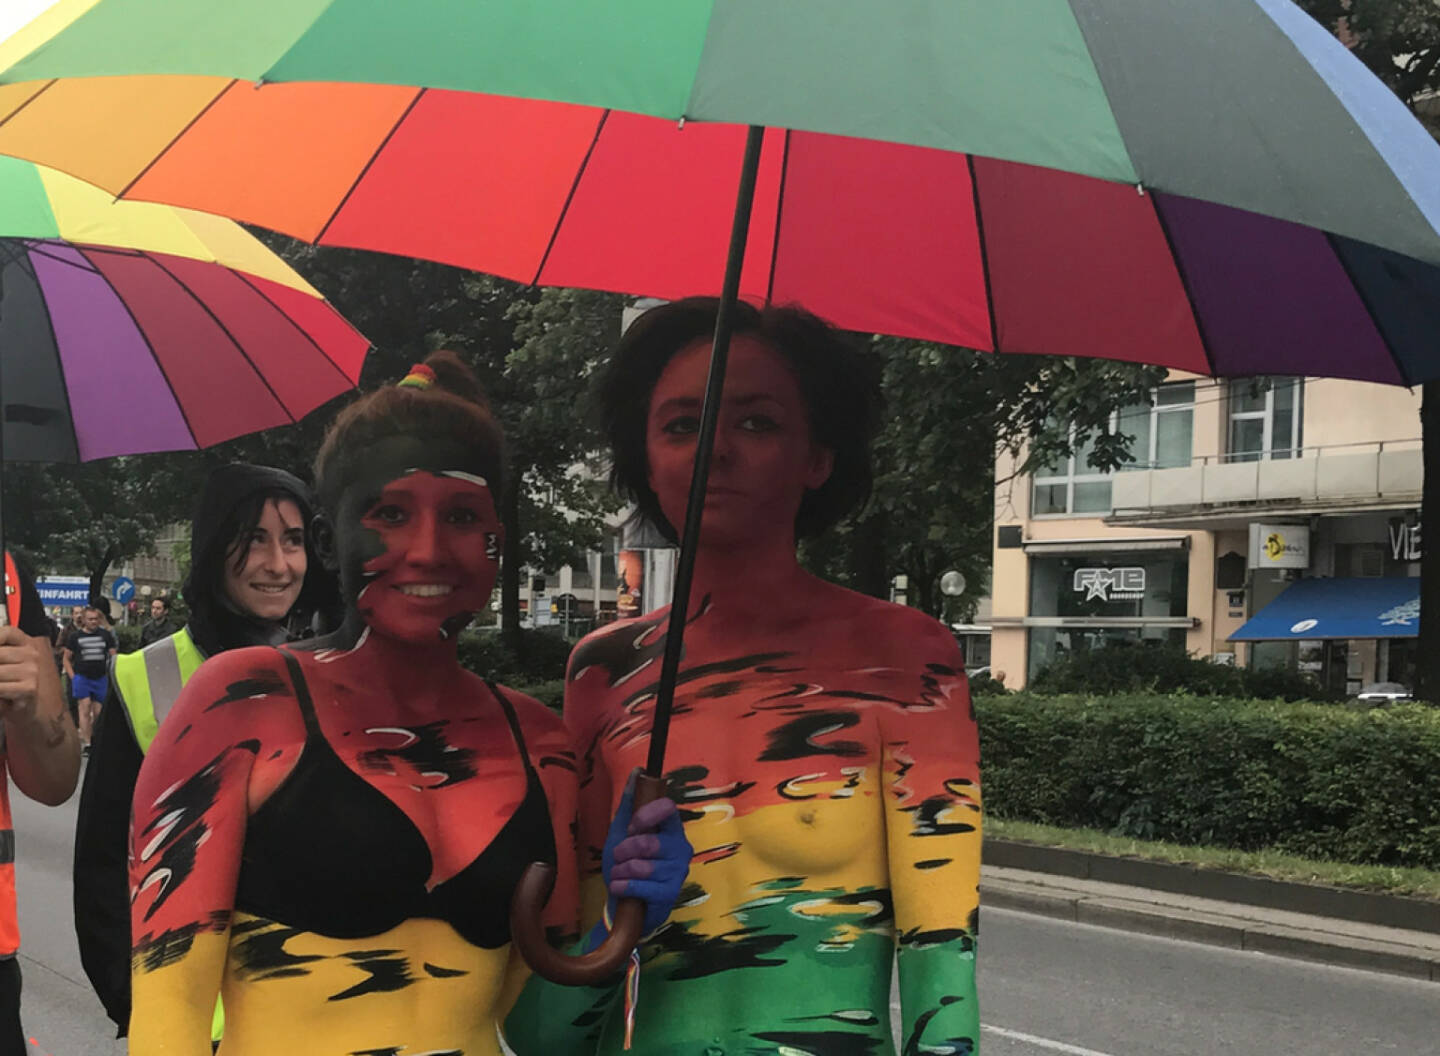 Regenbogenparade 2017 Wien: Regenschirm